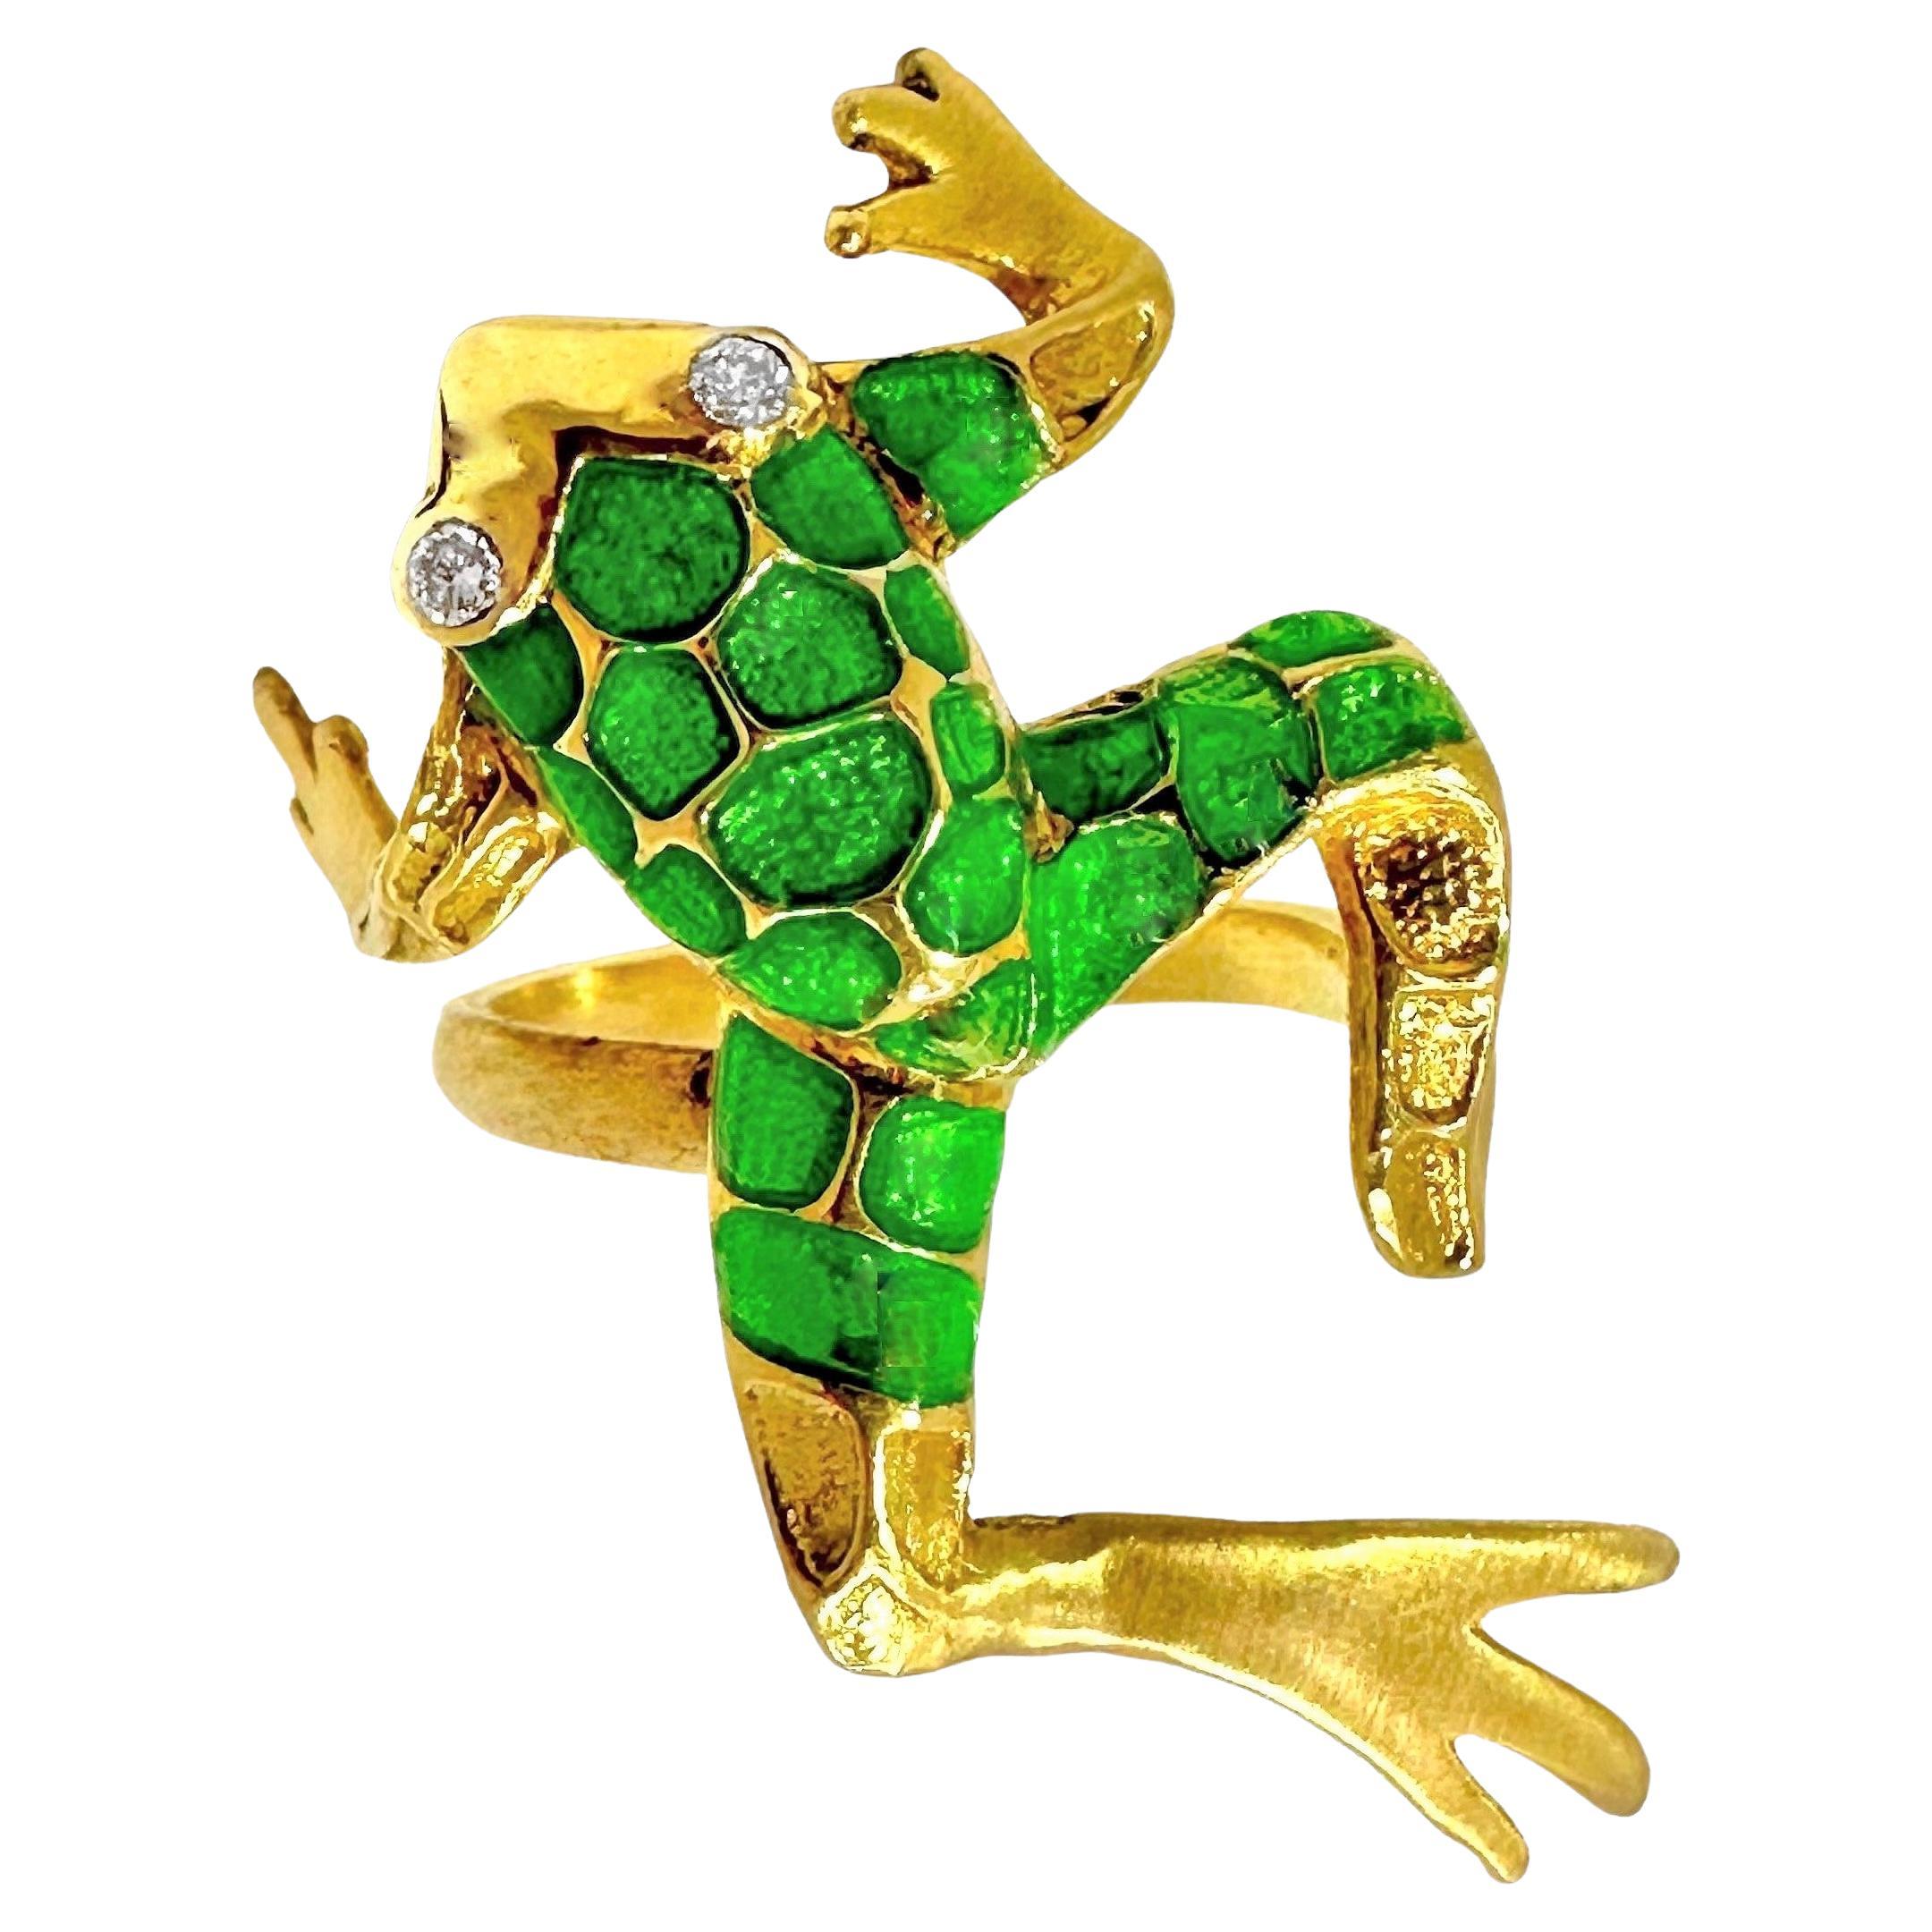 Lifelike Frosch-Motiv-Ring aus 18 Karat Gelbgold, grüner Emaille und Diamanten